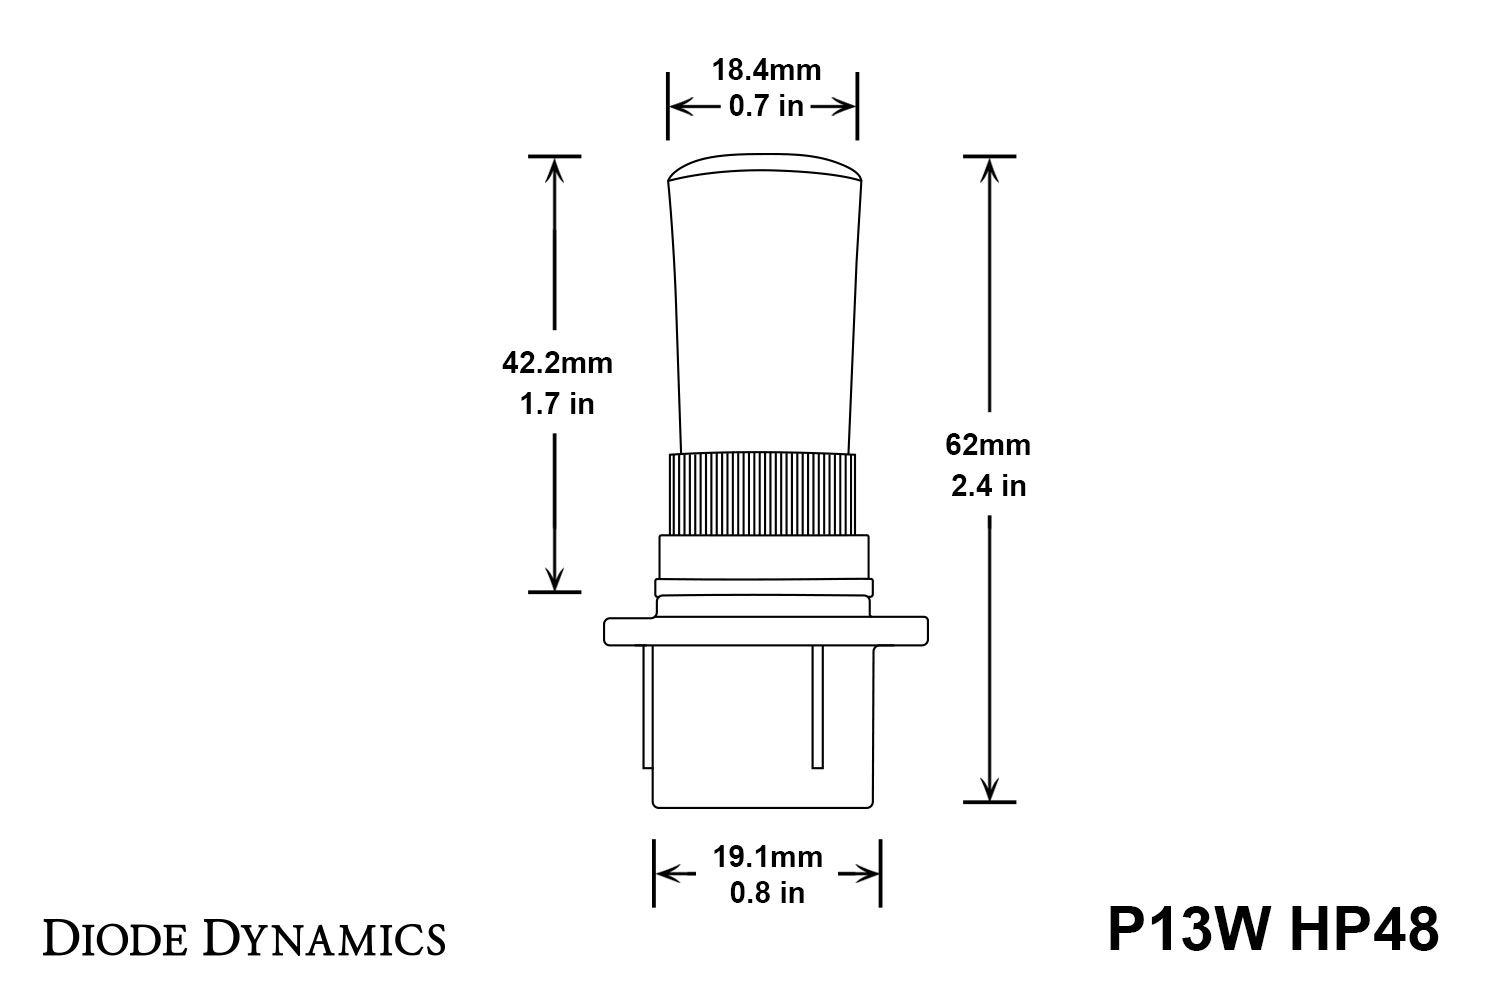 P13W HP48 LED Bulbs Cool White Pair Diode Dynamics-dd0188p